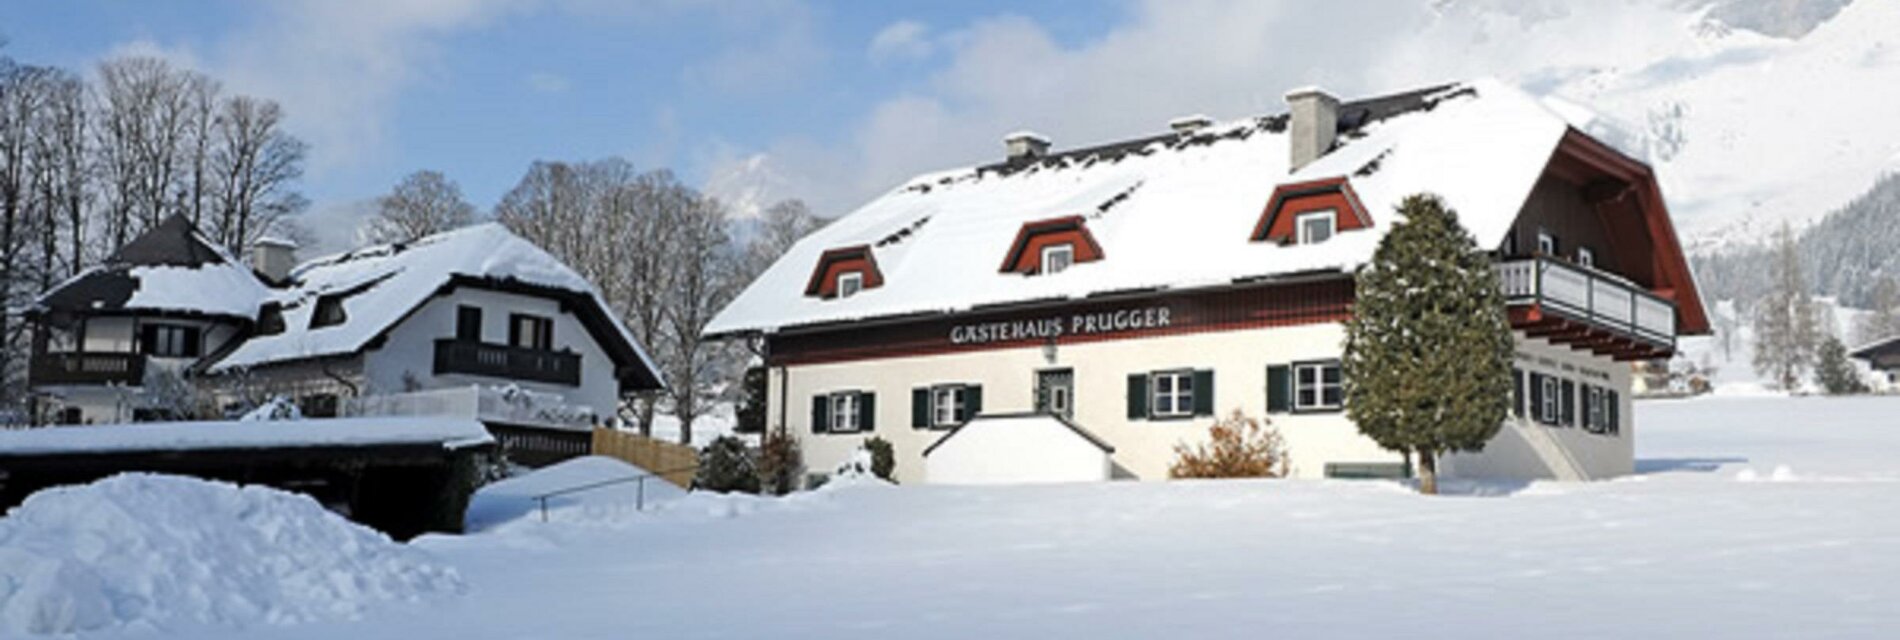 gaestehaus-prugger-wintertraum